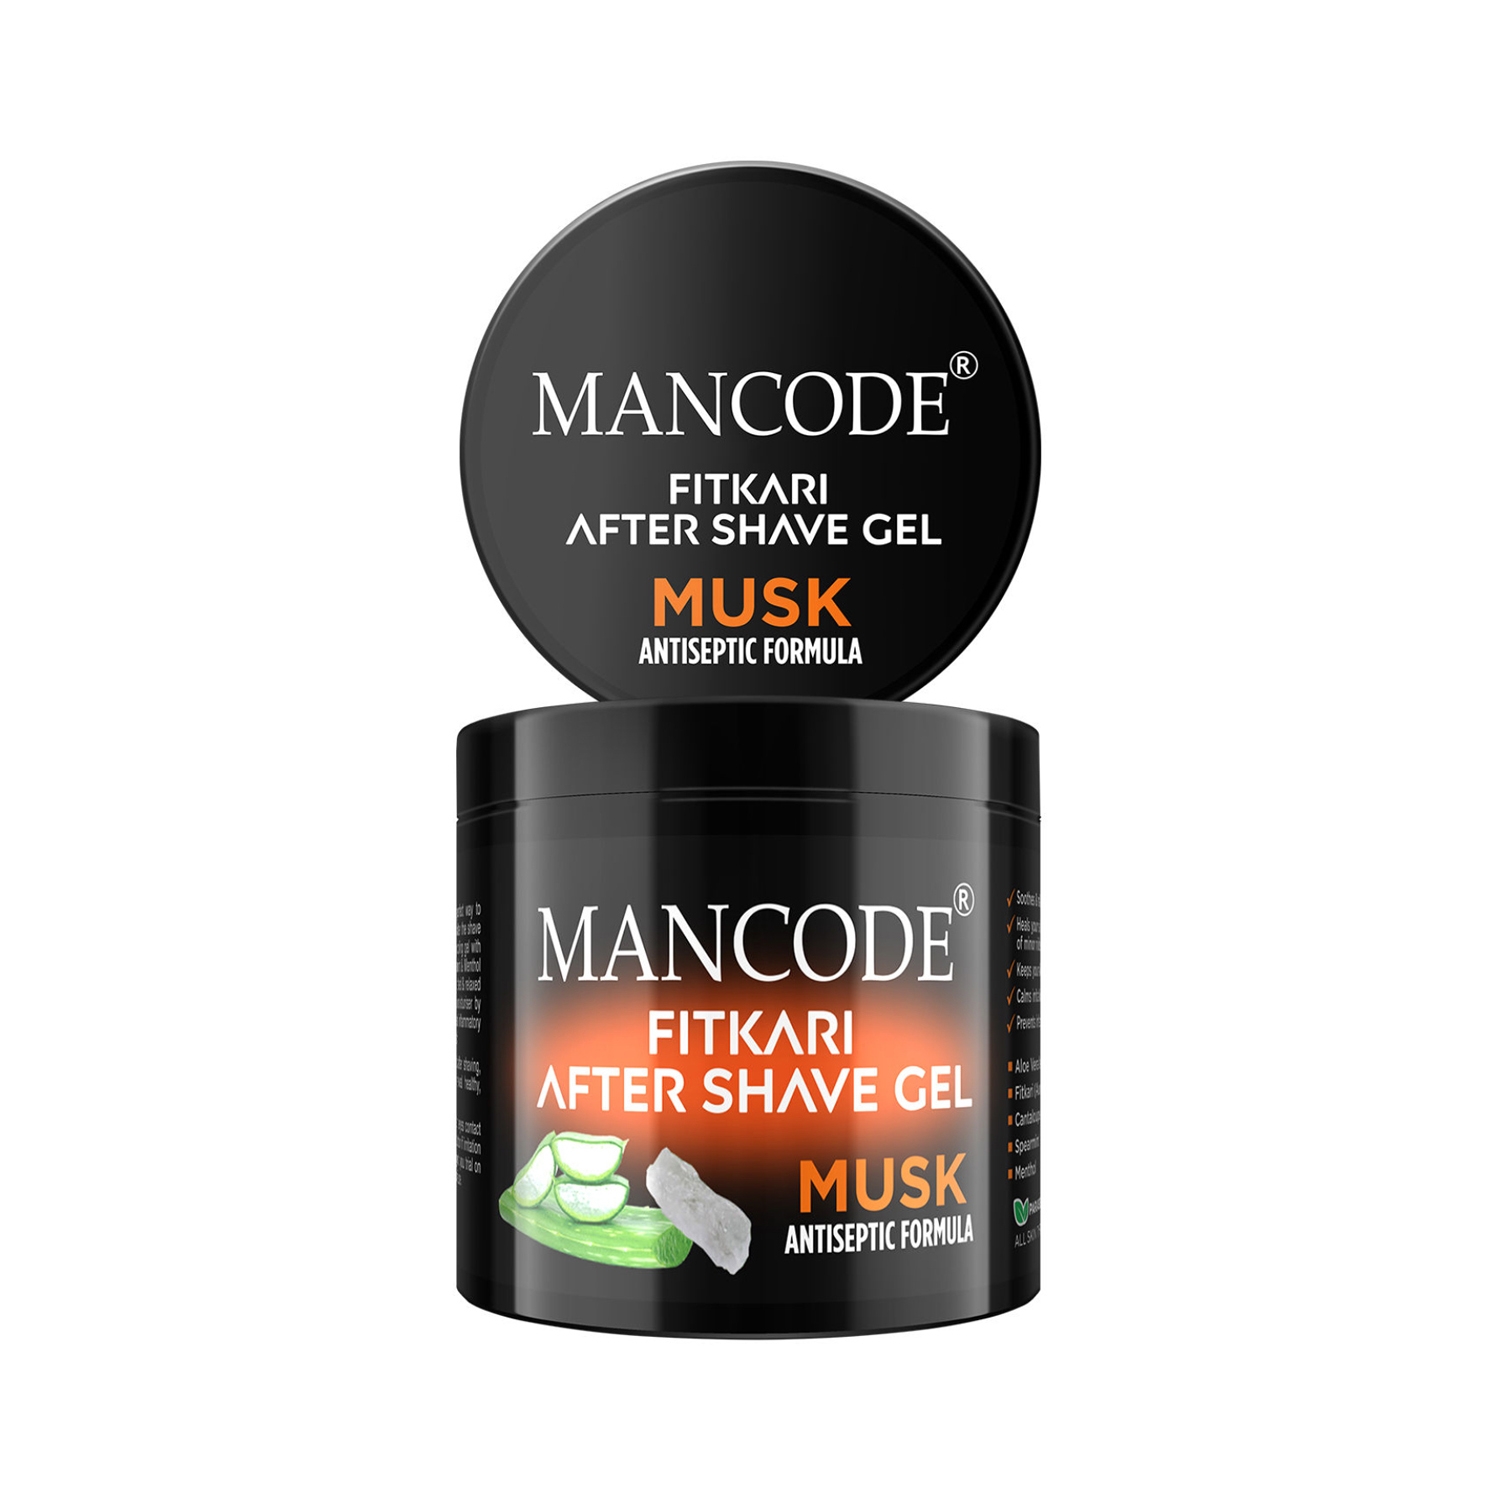 Mancode | Mancode Fitkari After Shave Gel Musk Antiseptic Formula (100g)